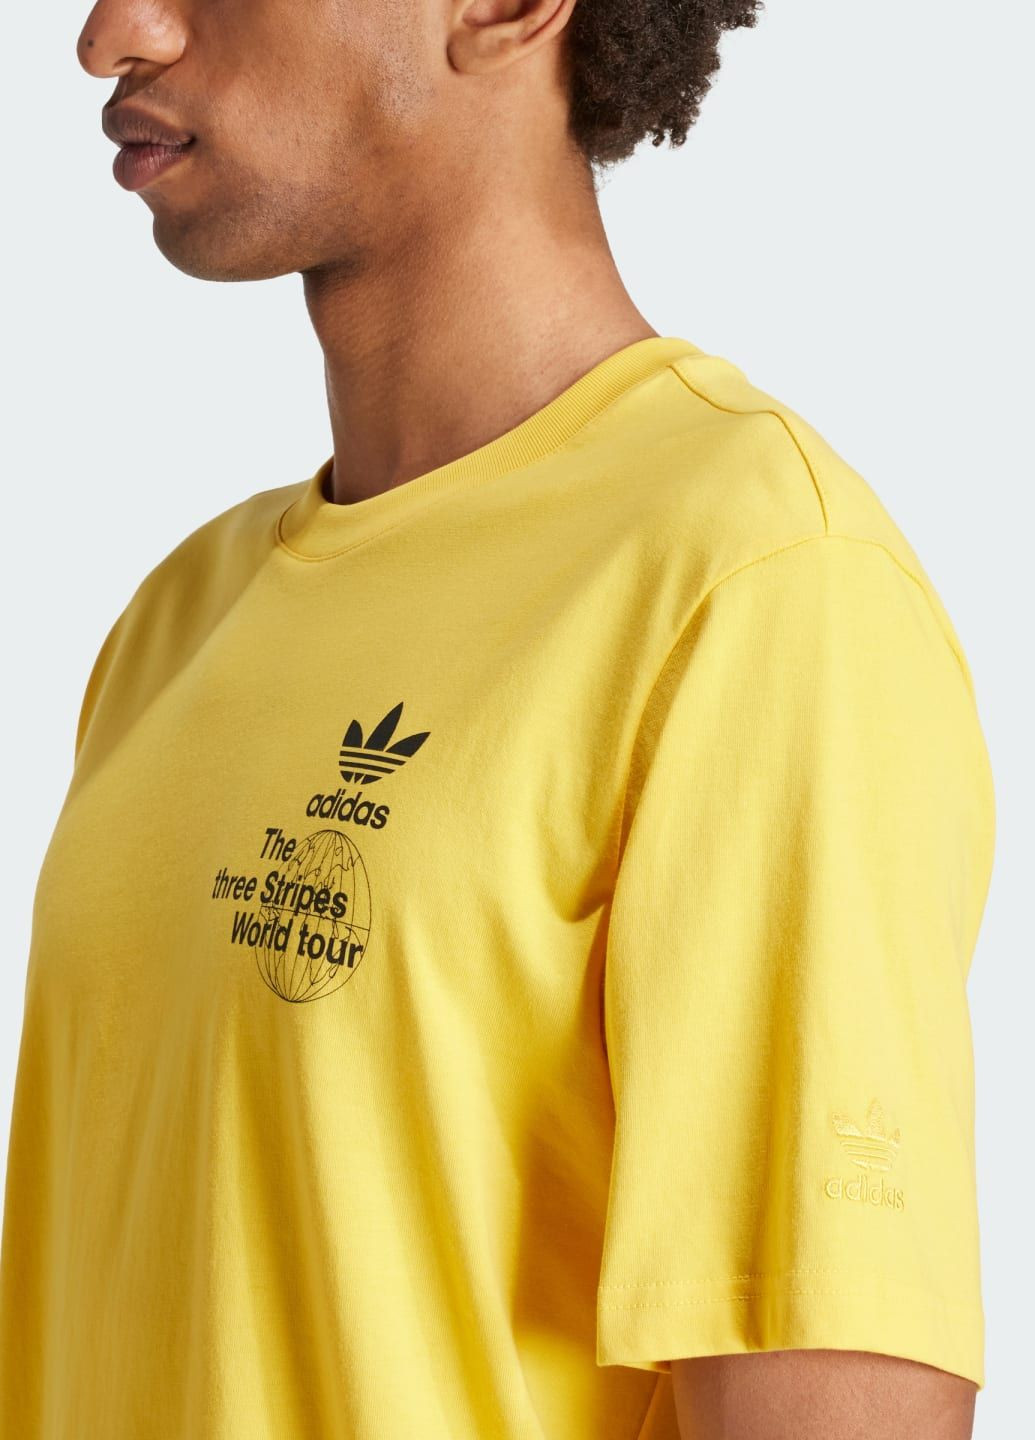 Золотая футболка bt adidas